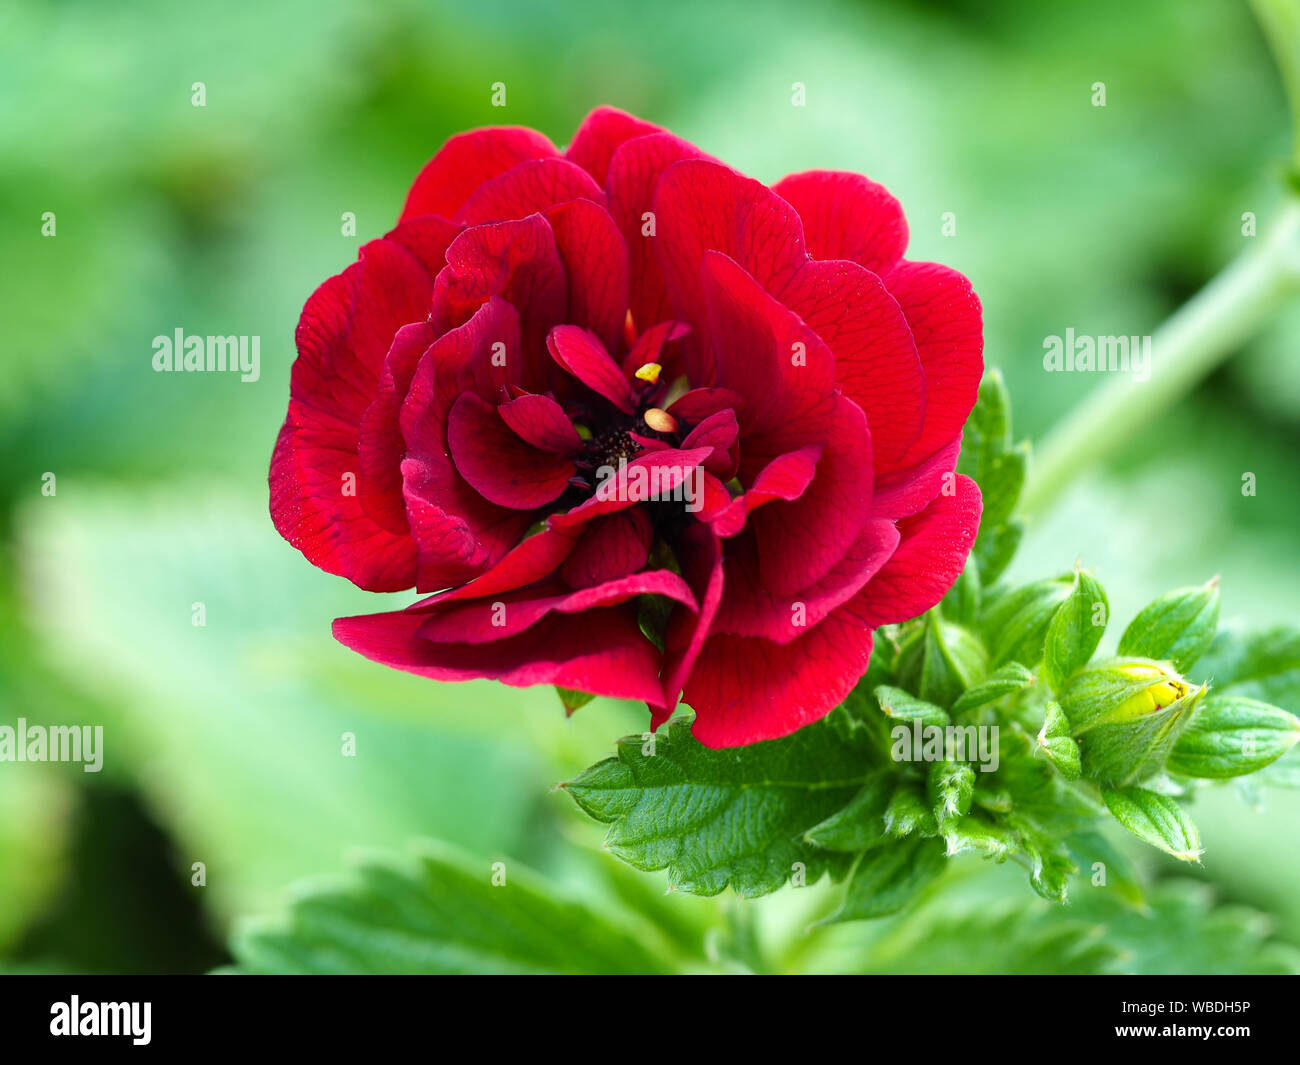 Nahaufnahme von einem schönen roten Potentilla Blume, Sorte "Flamenco" Stockfoto